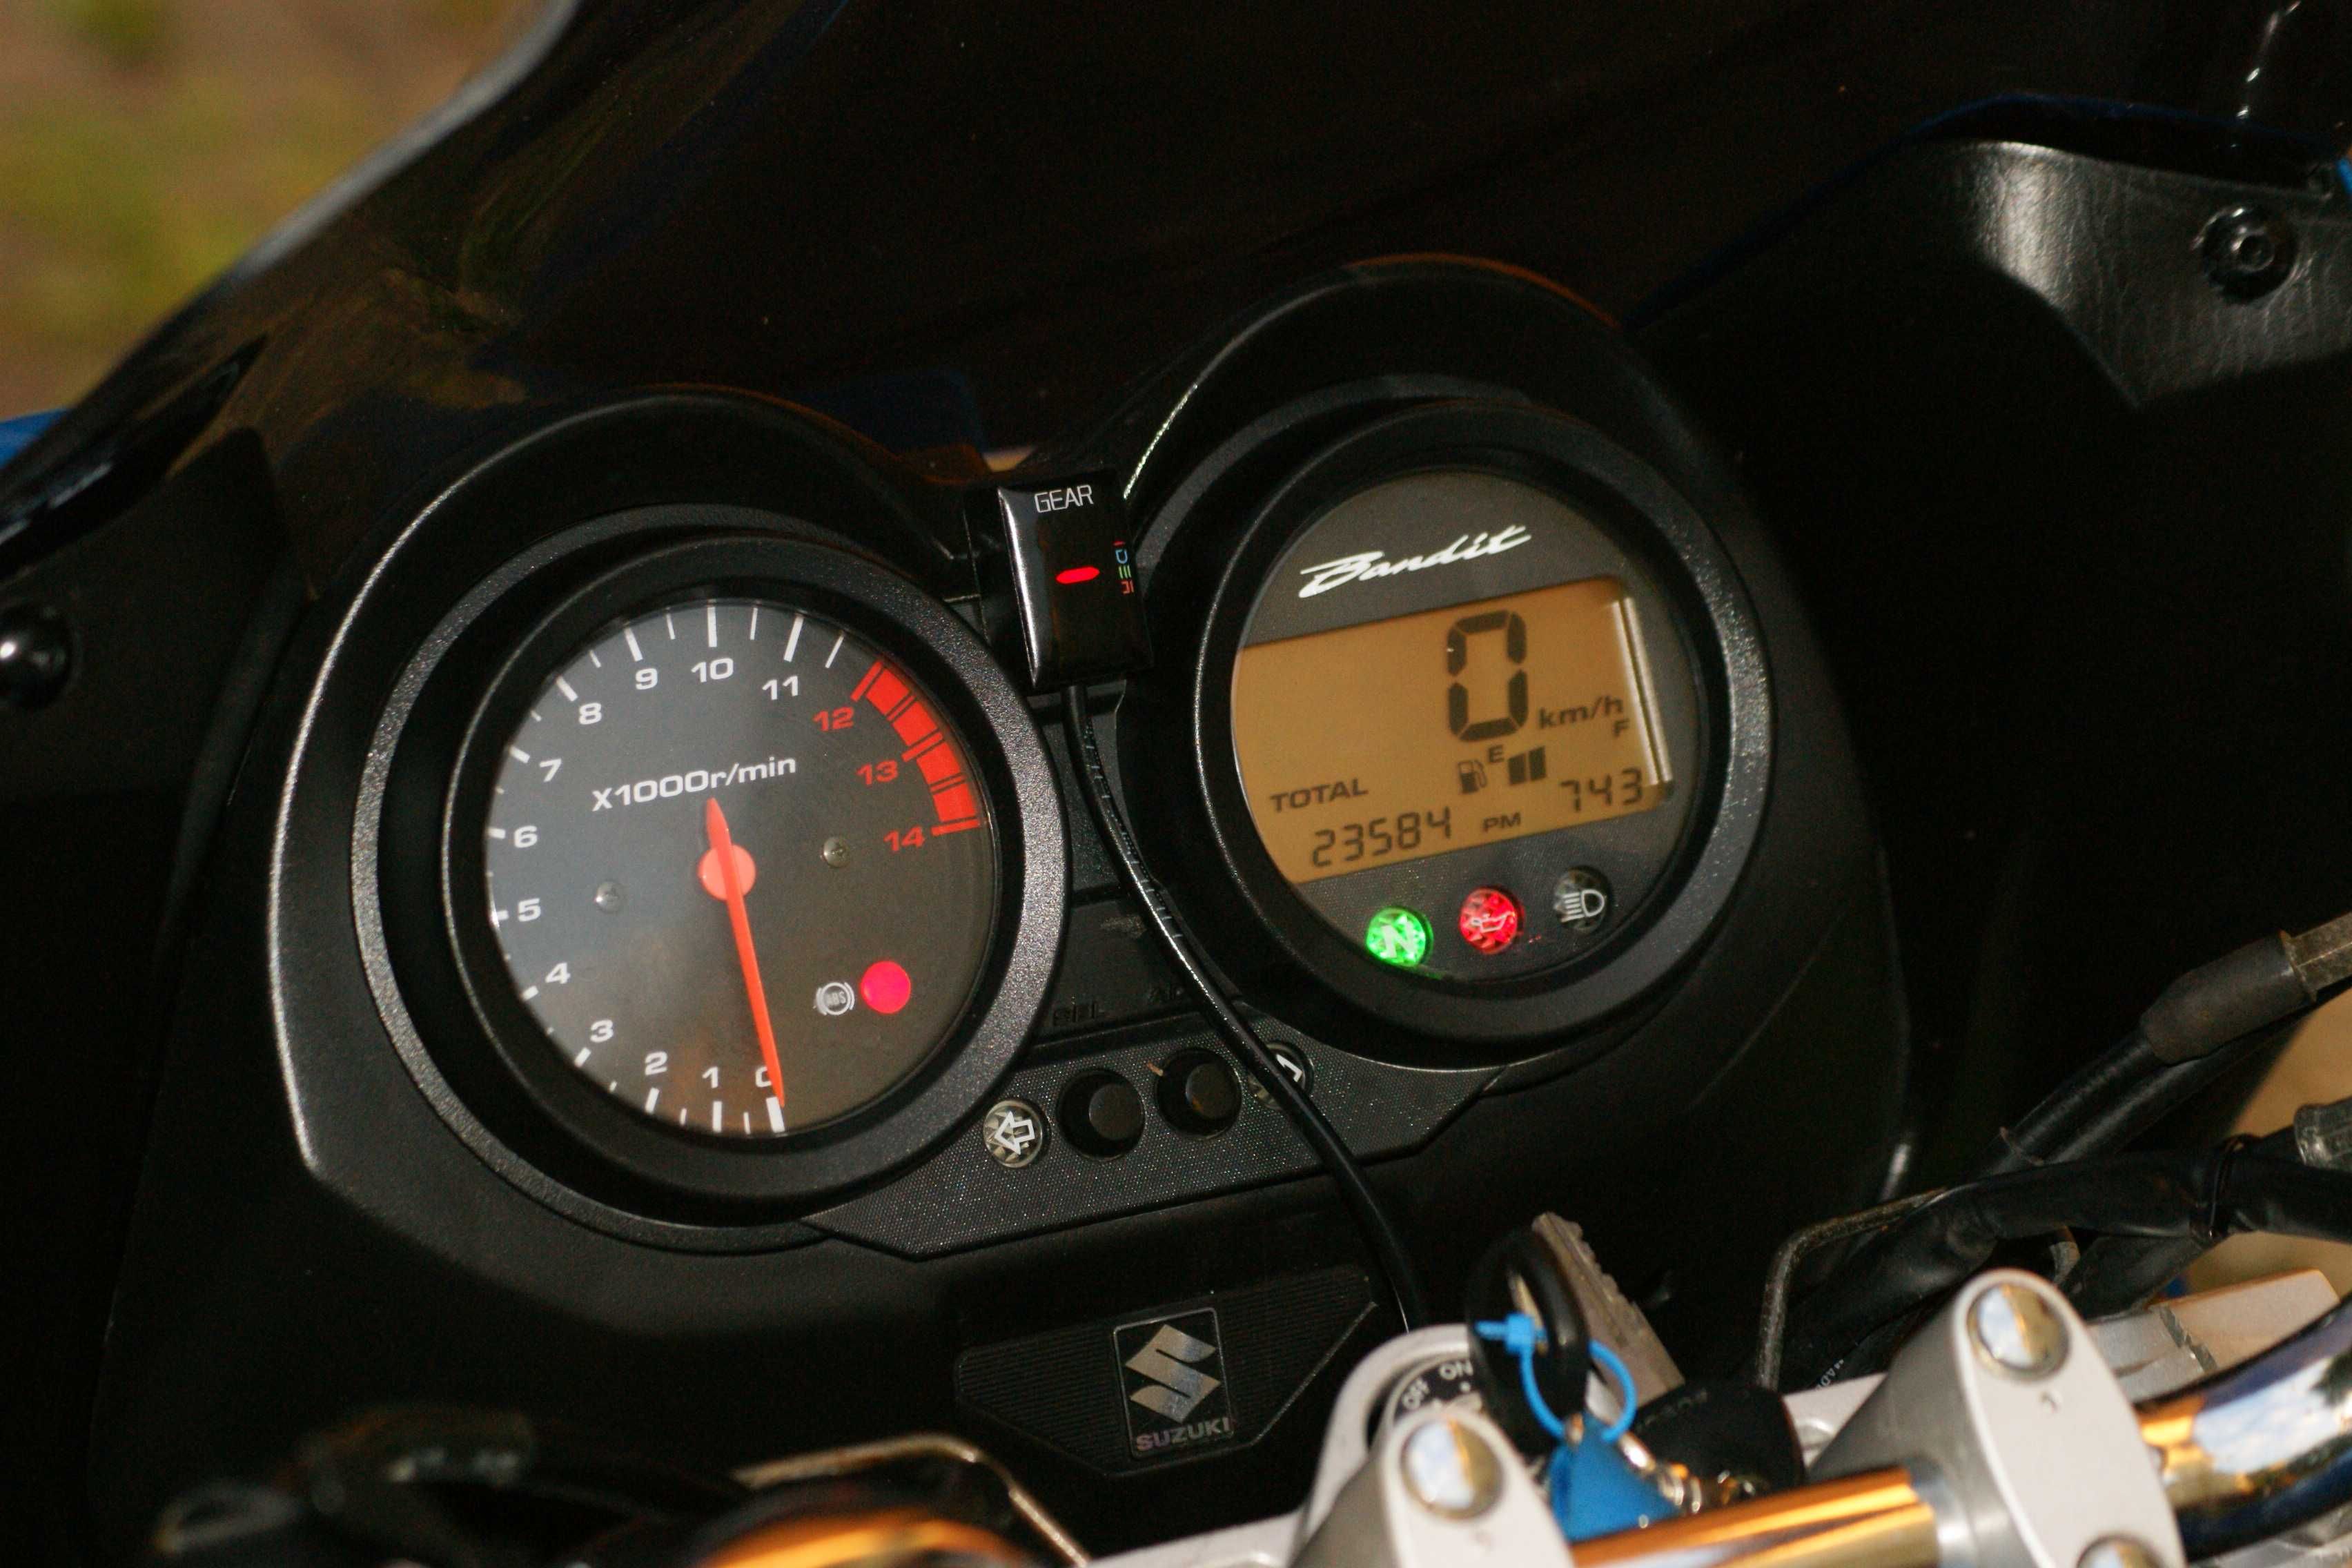 Suzuki Bandit 650,Gsf 650.ABS,Niemcy,23584km.